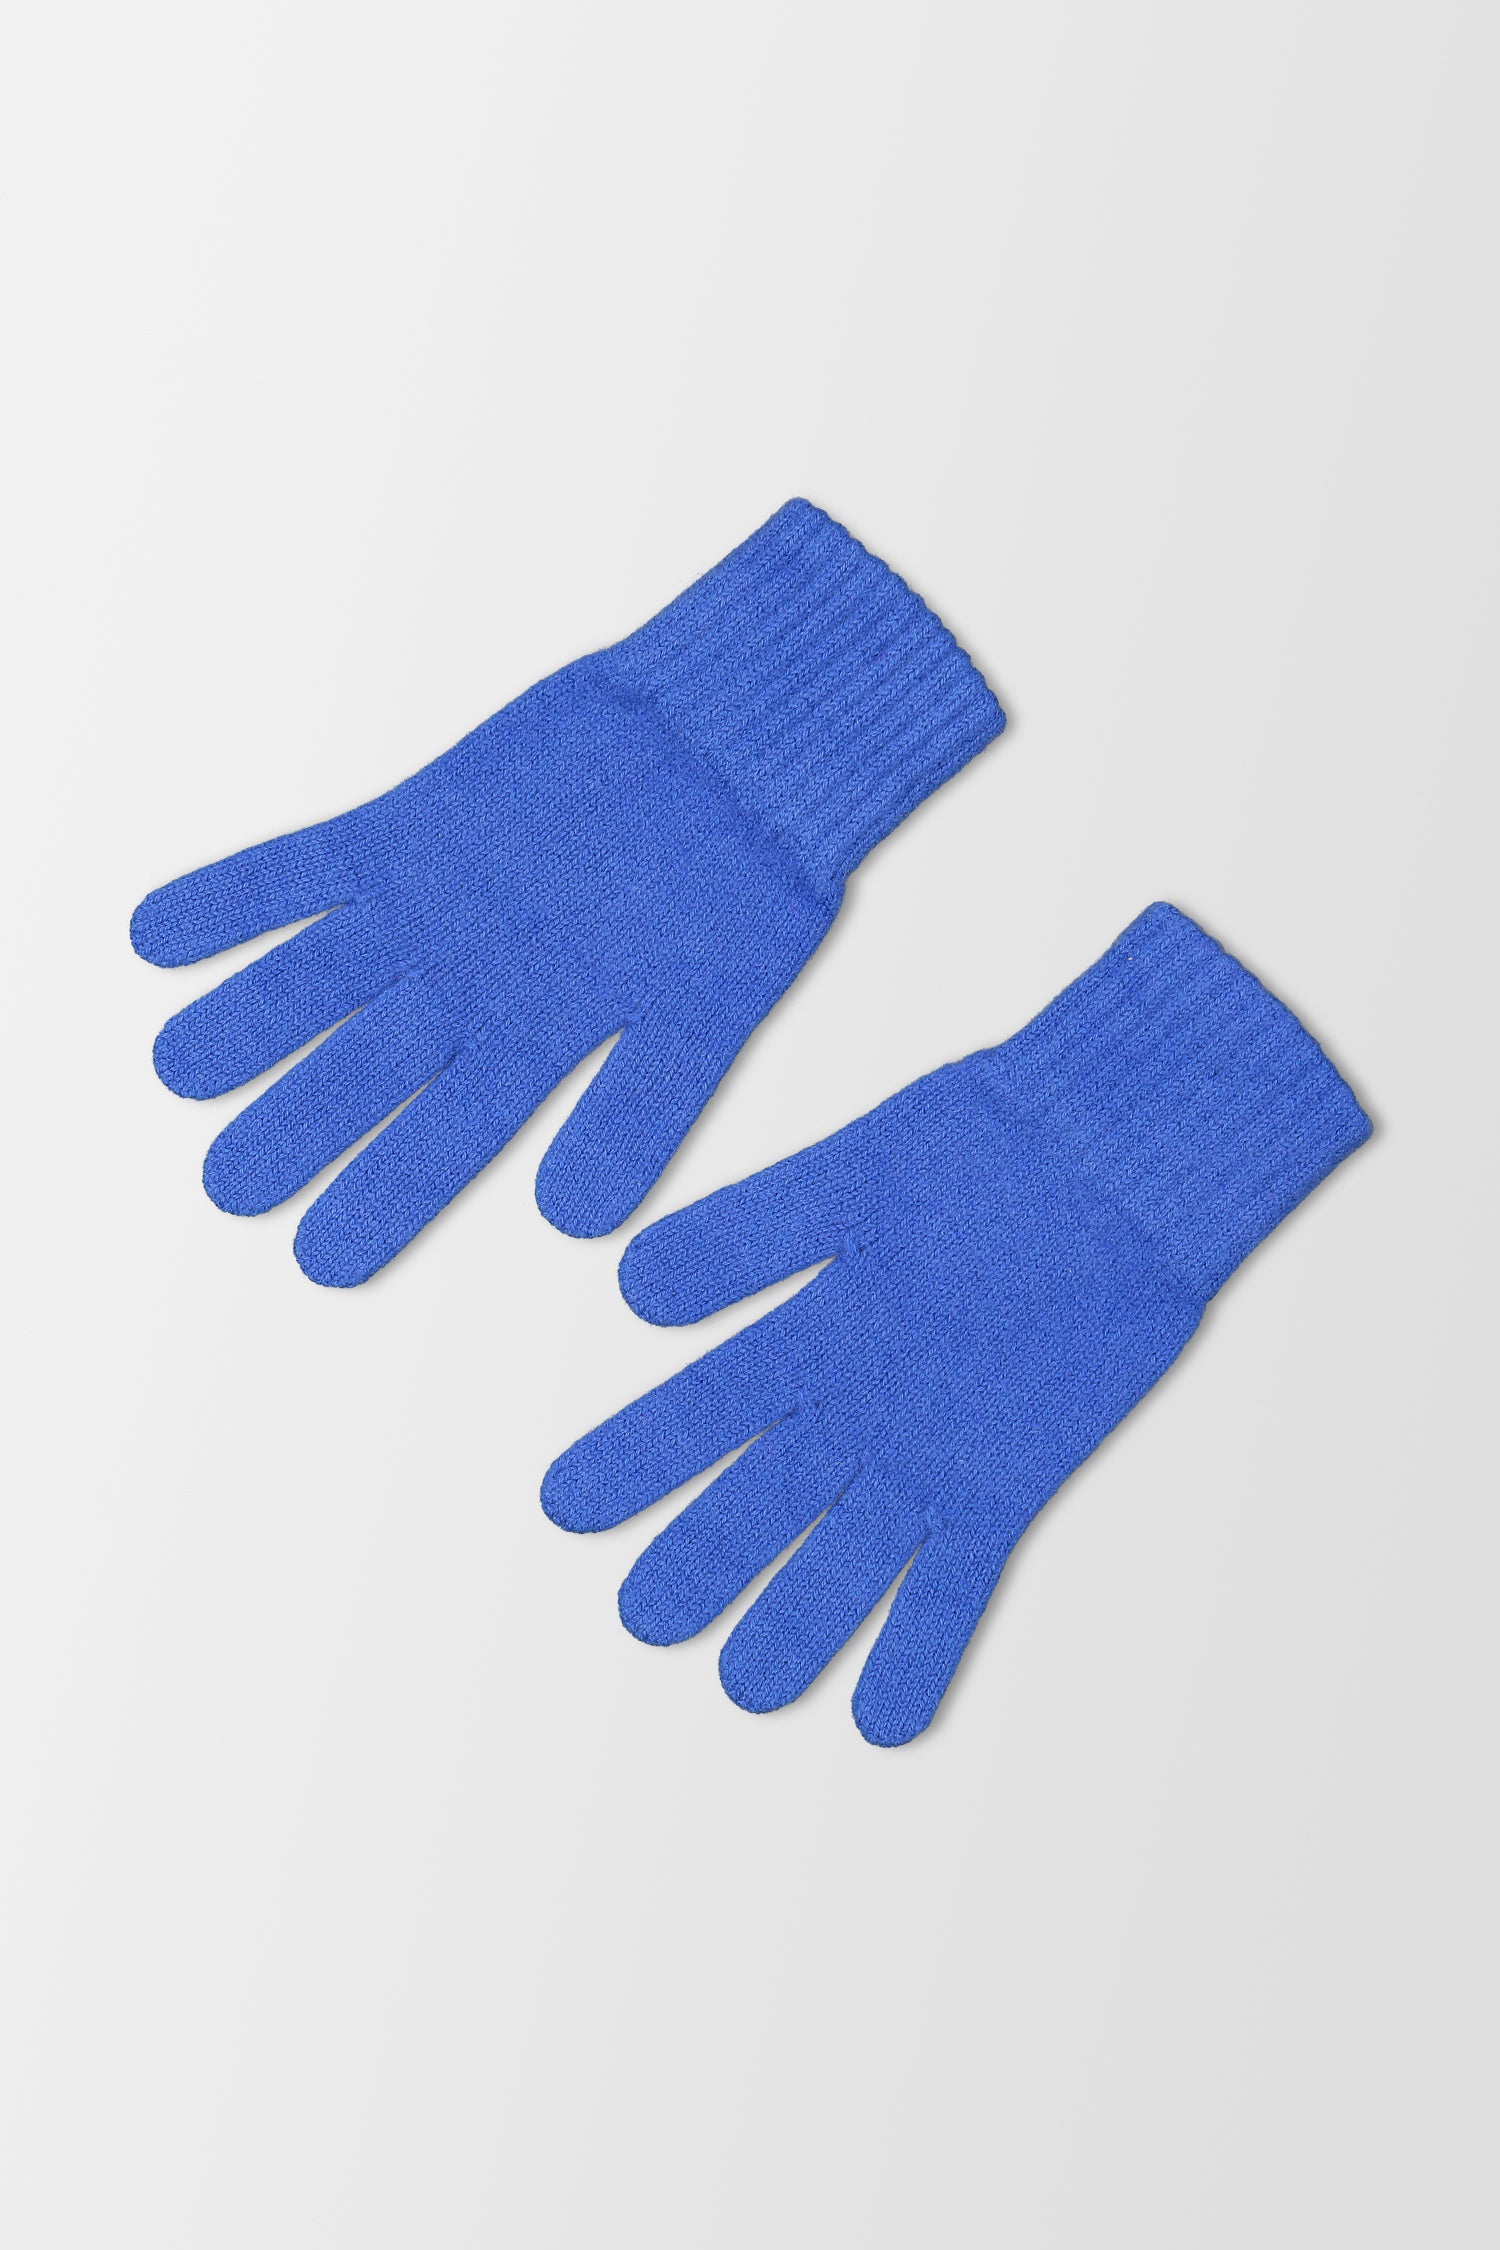 Joshua Ellis Knitted Blue Gloves